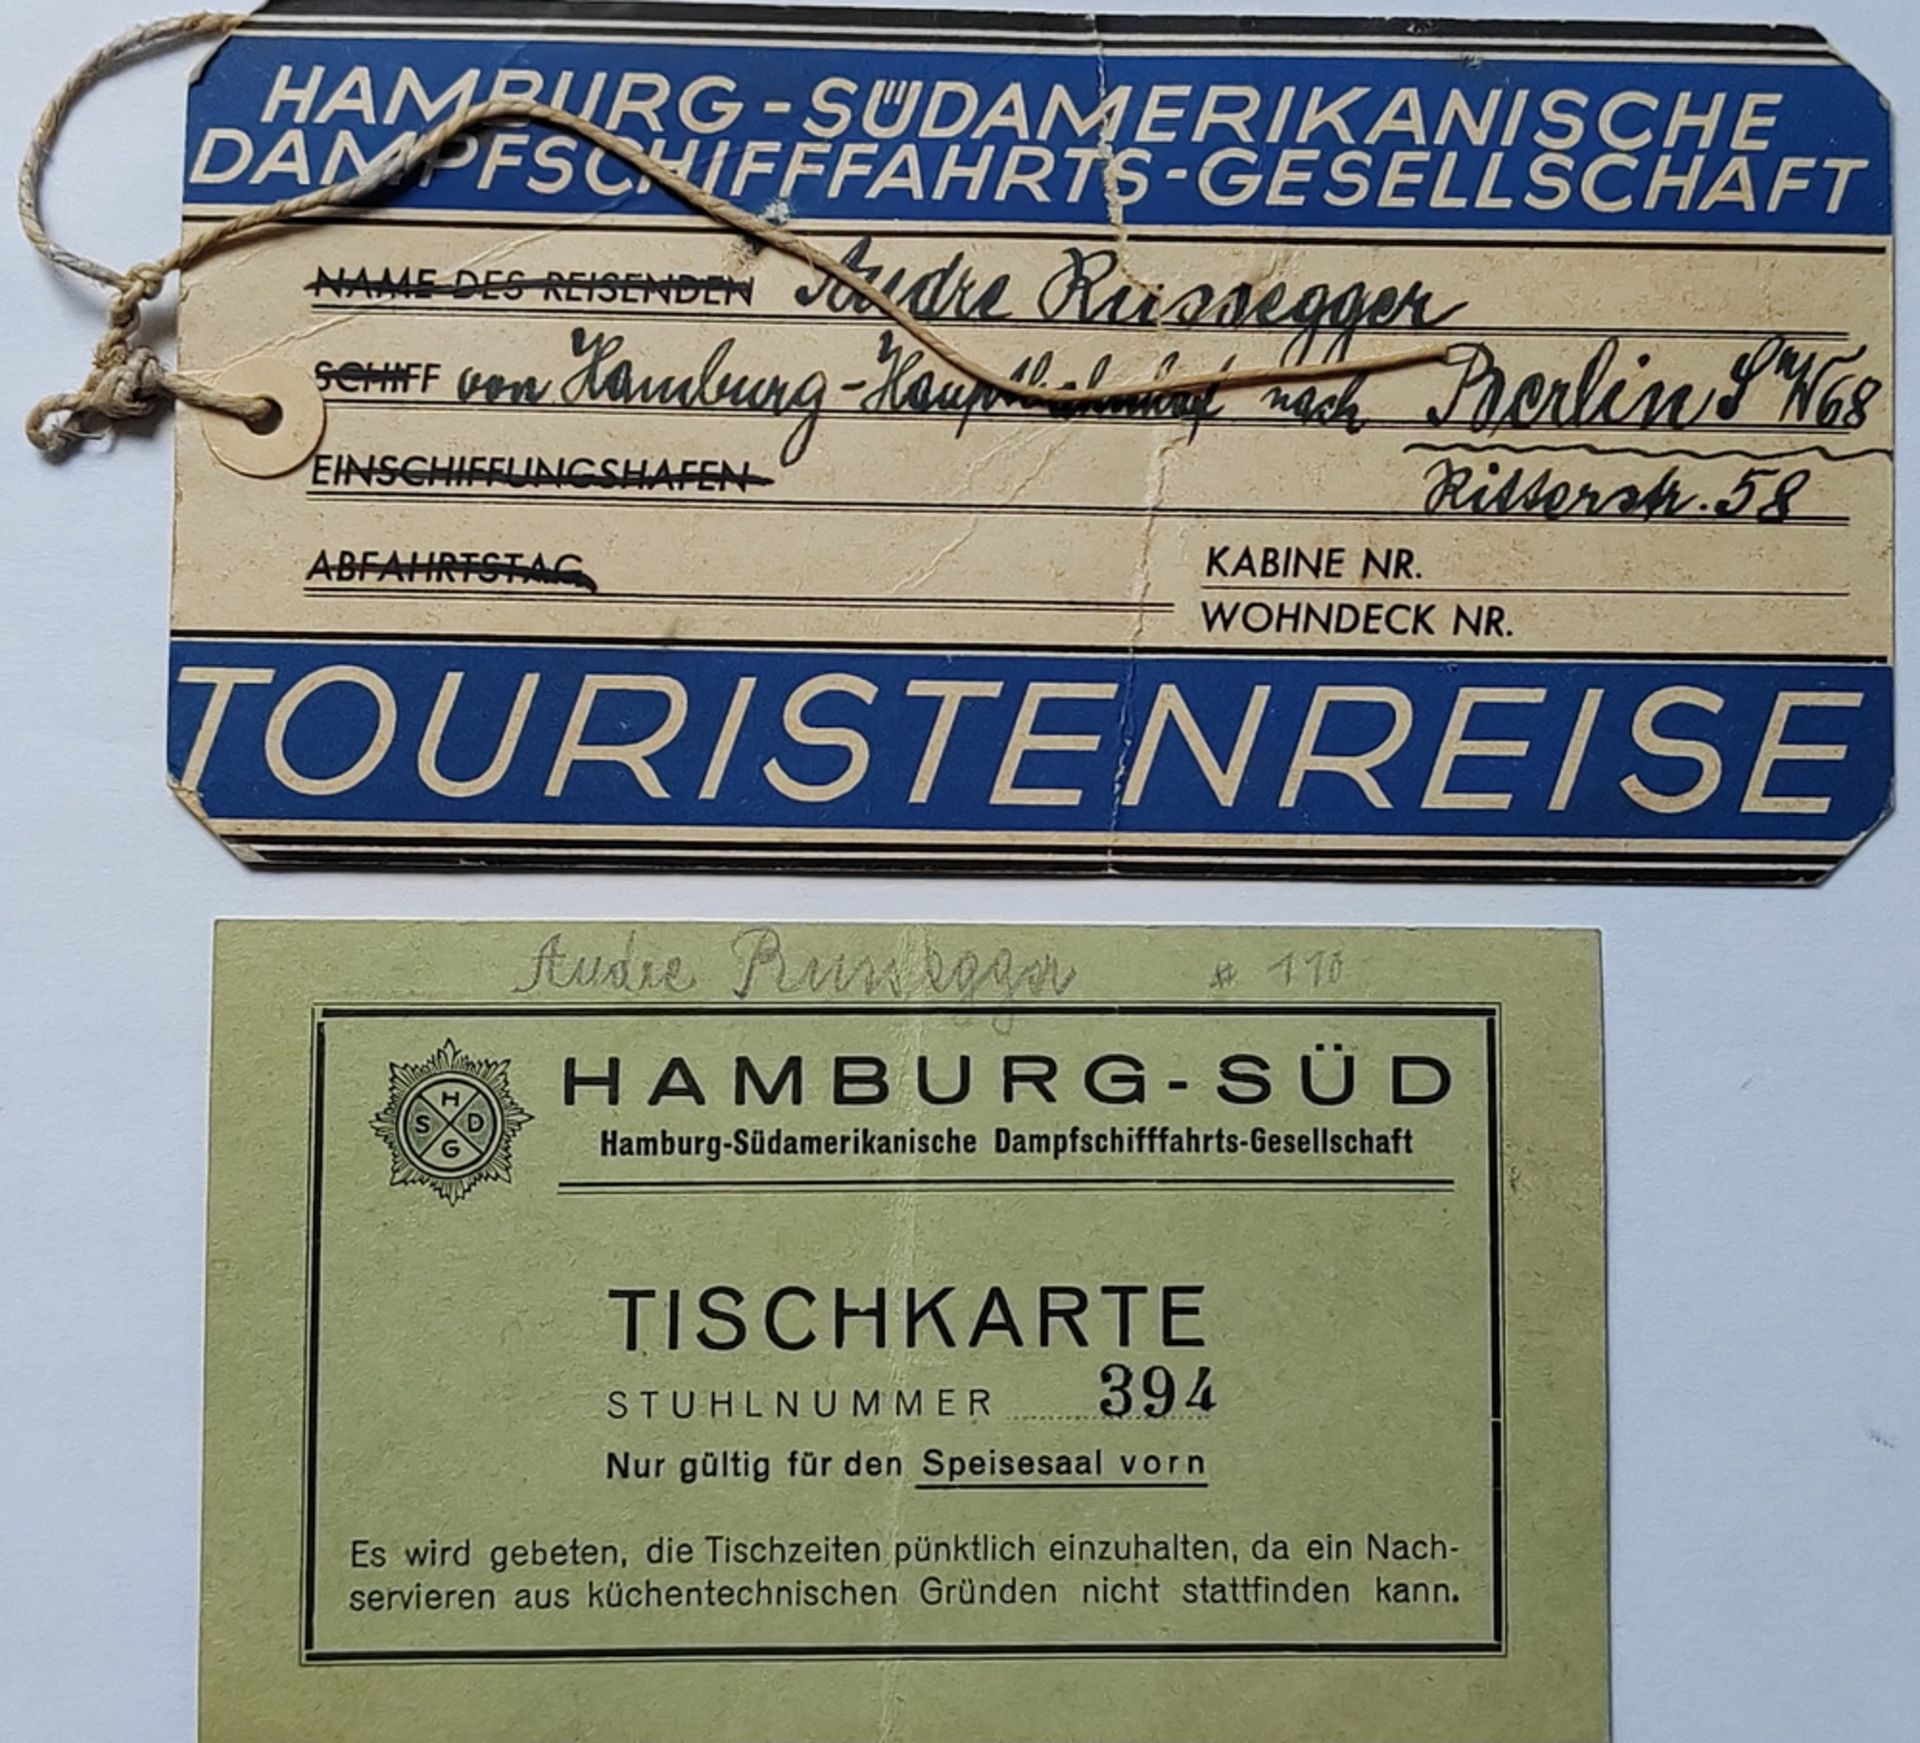 1x Kofferanhänger sowie 1 Tischkarte "Hamburg-Süd Dampfschifffahrts-Gesellschaft"